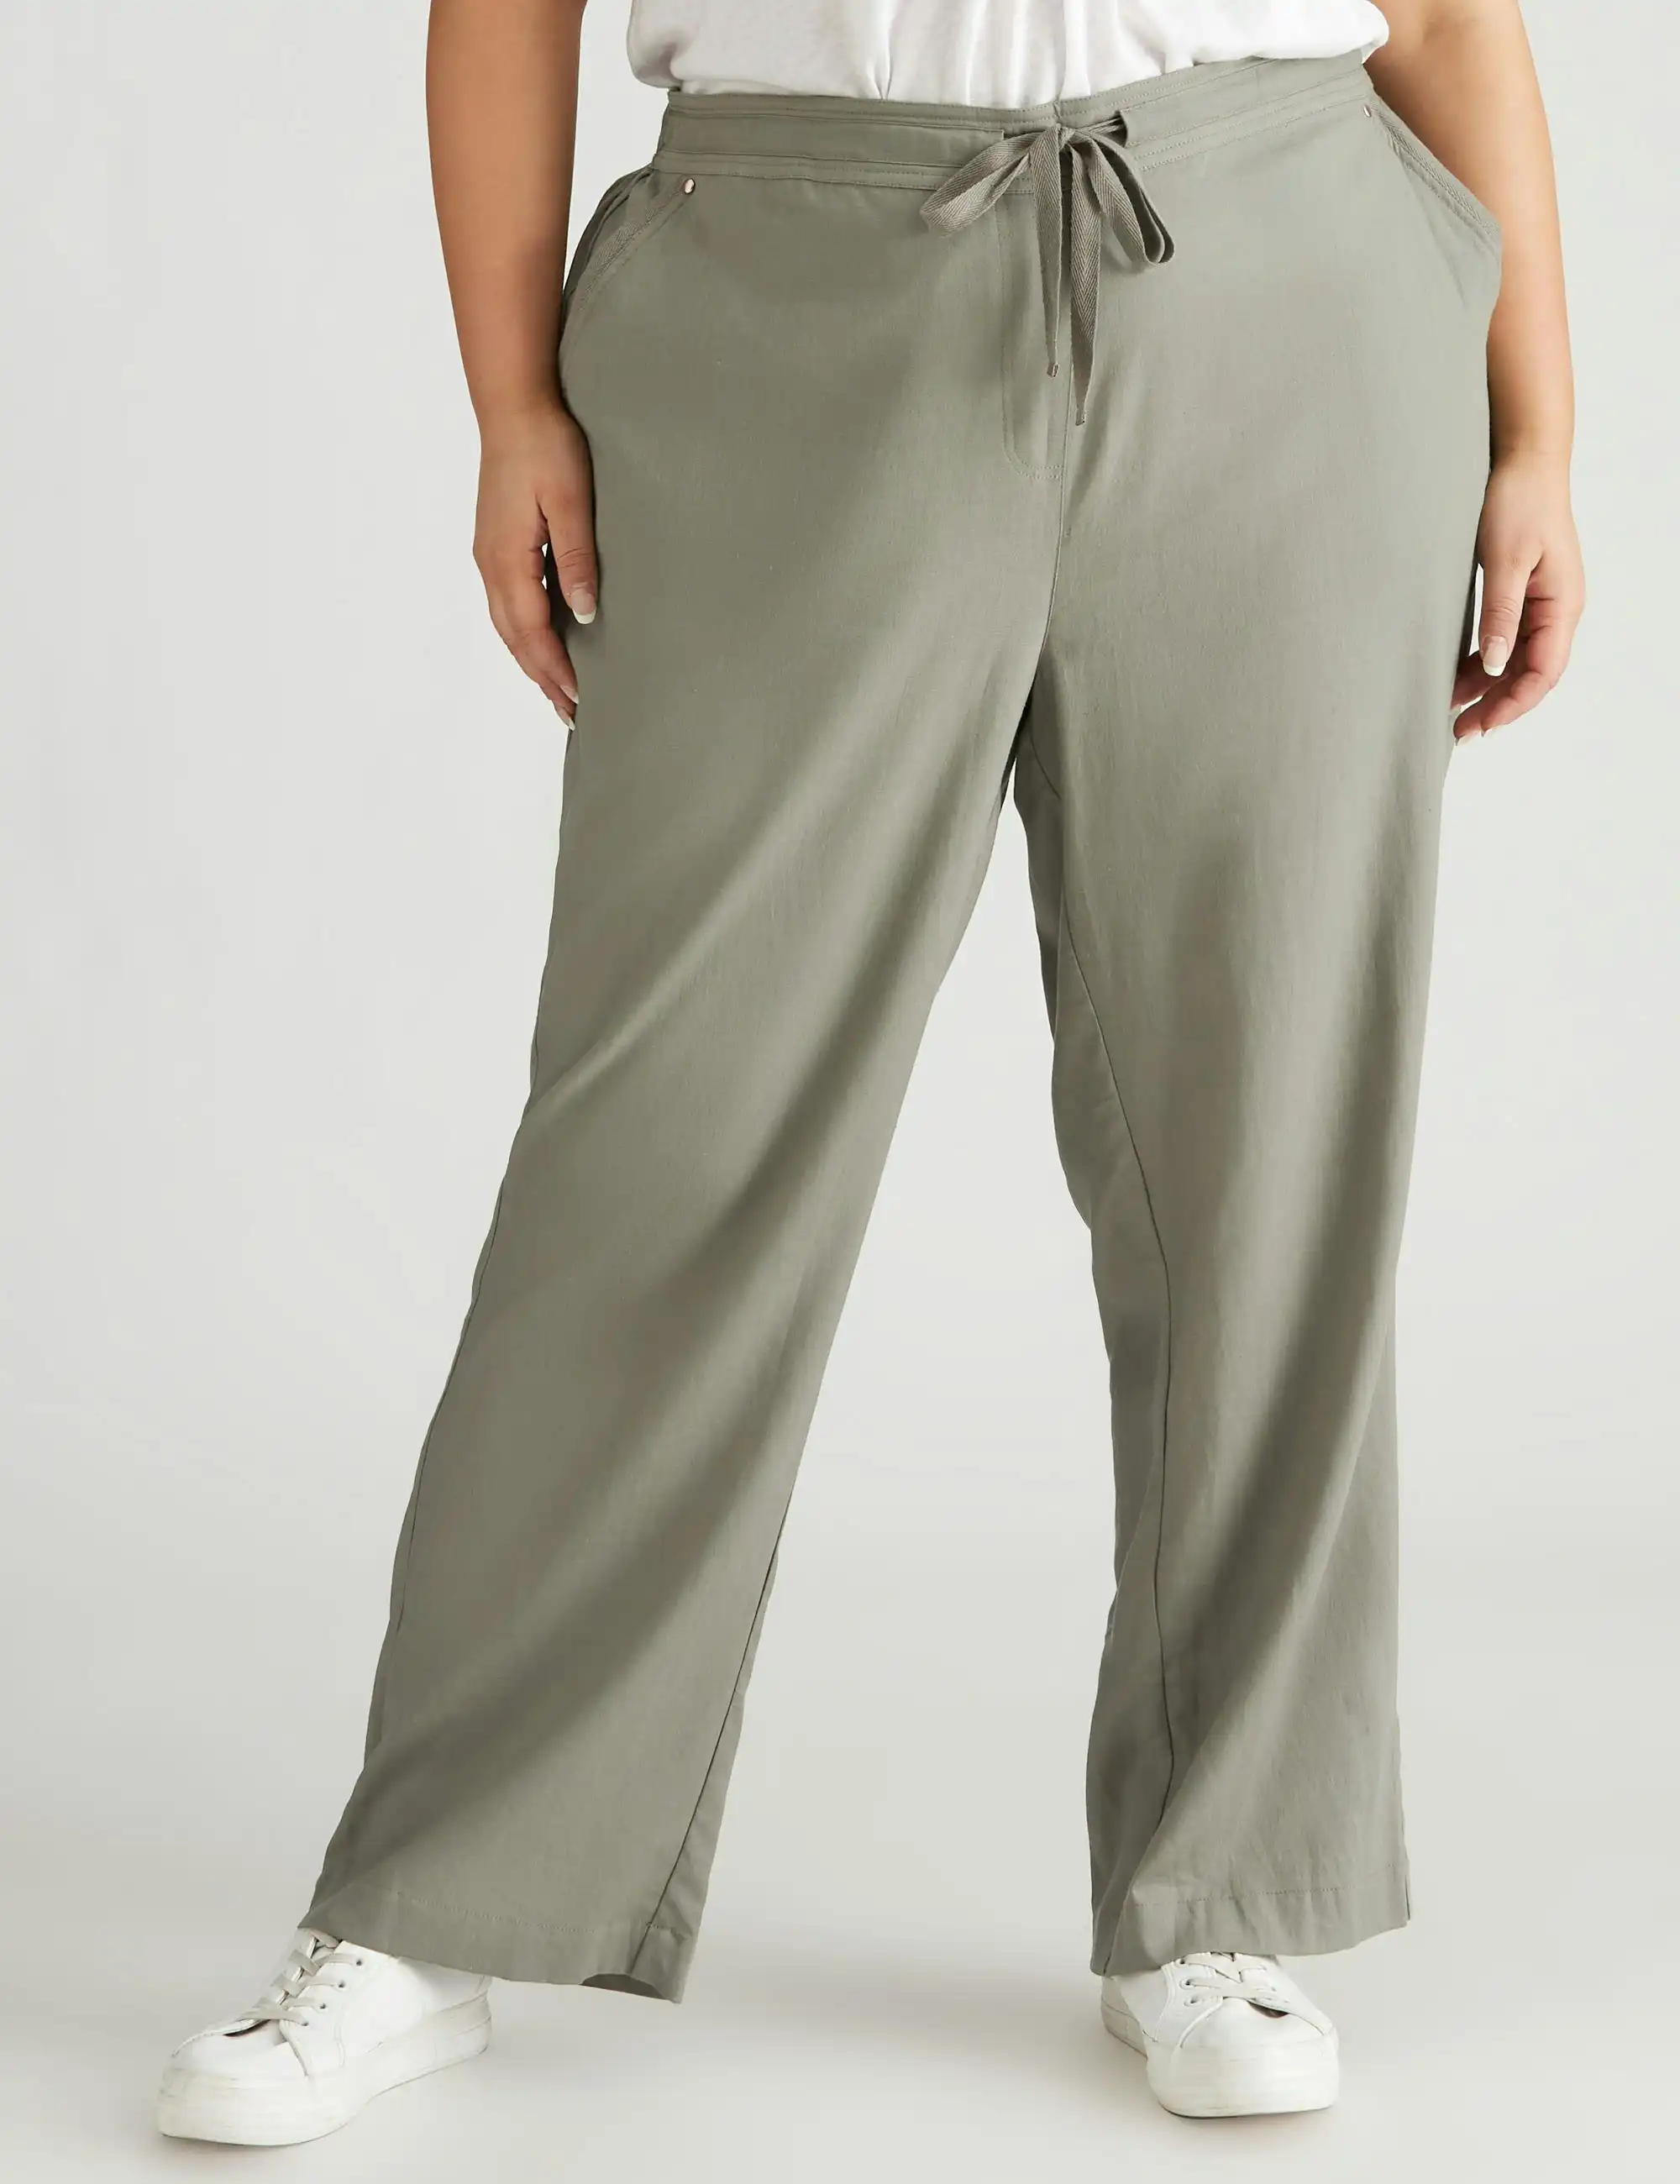 beme Linen Blend Full Length Pants (Soft Sage)